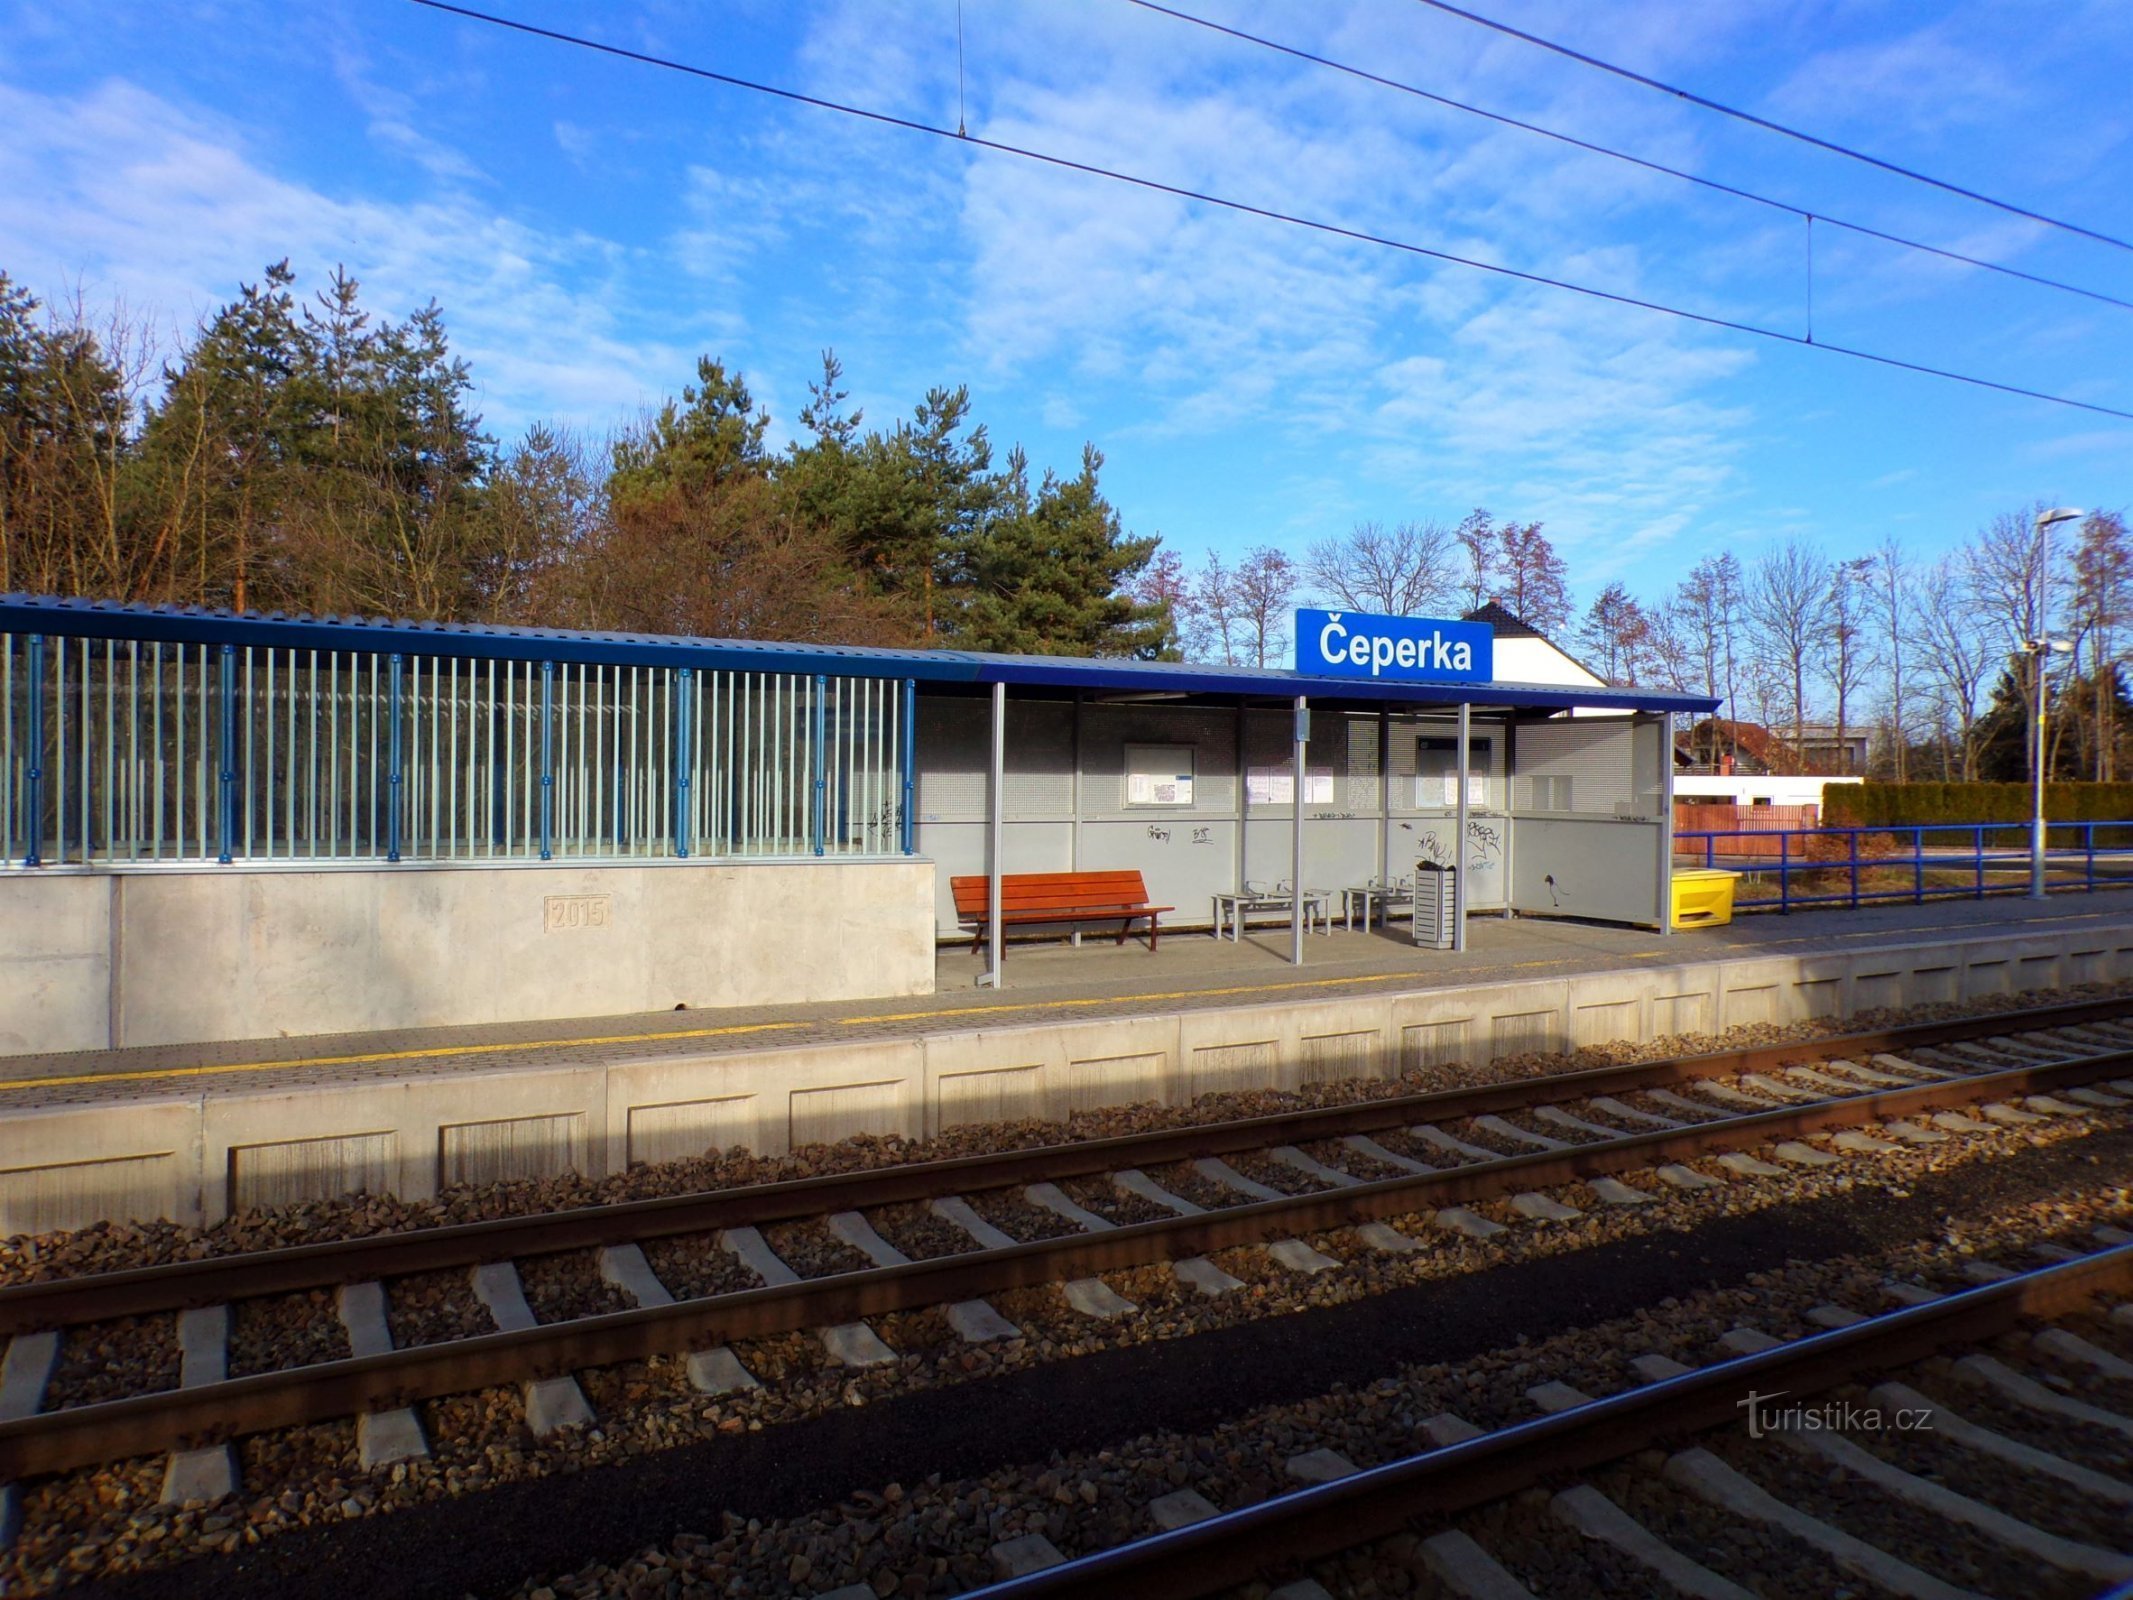 Железнодорожный вокзал (Чеперка, 18.2.2022)